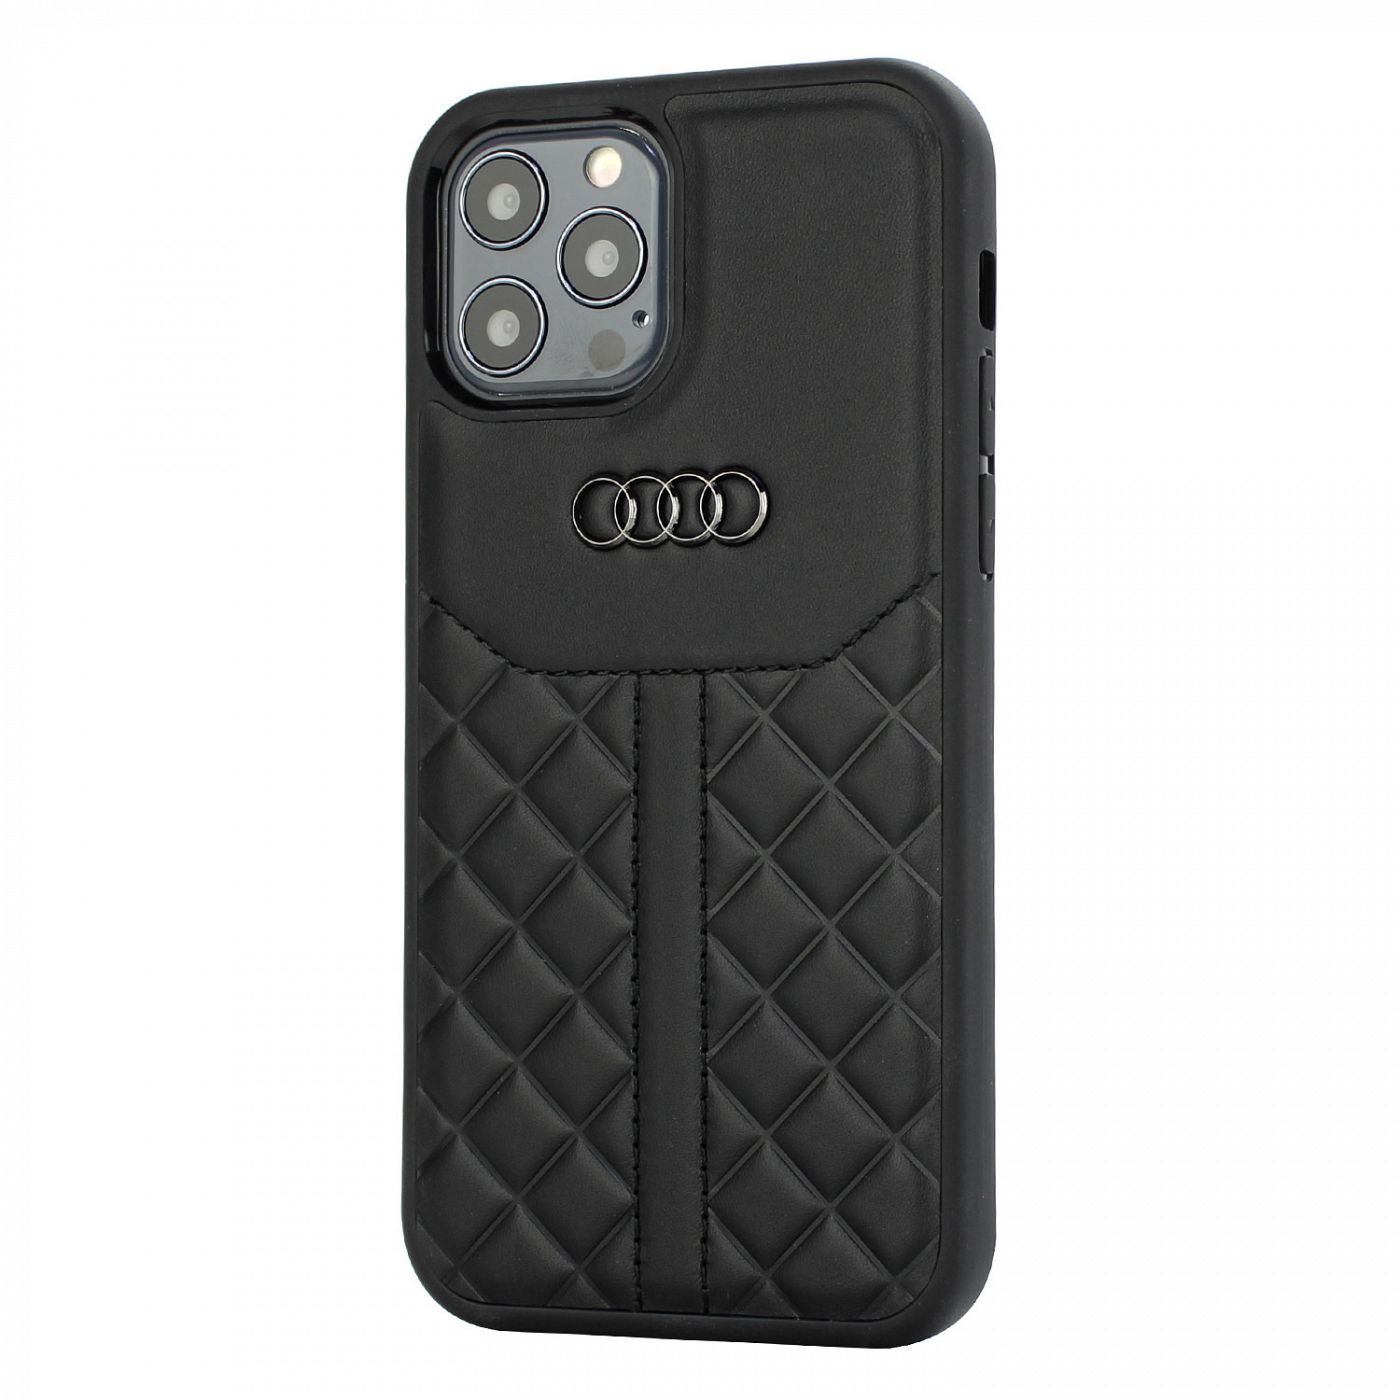 Graag gedaan boezem glas Audi iPhone 13 Back cover hoesje - Zwart - Q8 Serie - Genuine Leather - GSM  Centre Westermarkt ✓🚚 Voor 20:00 besteld morgen in huis ✓